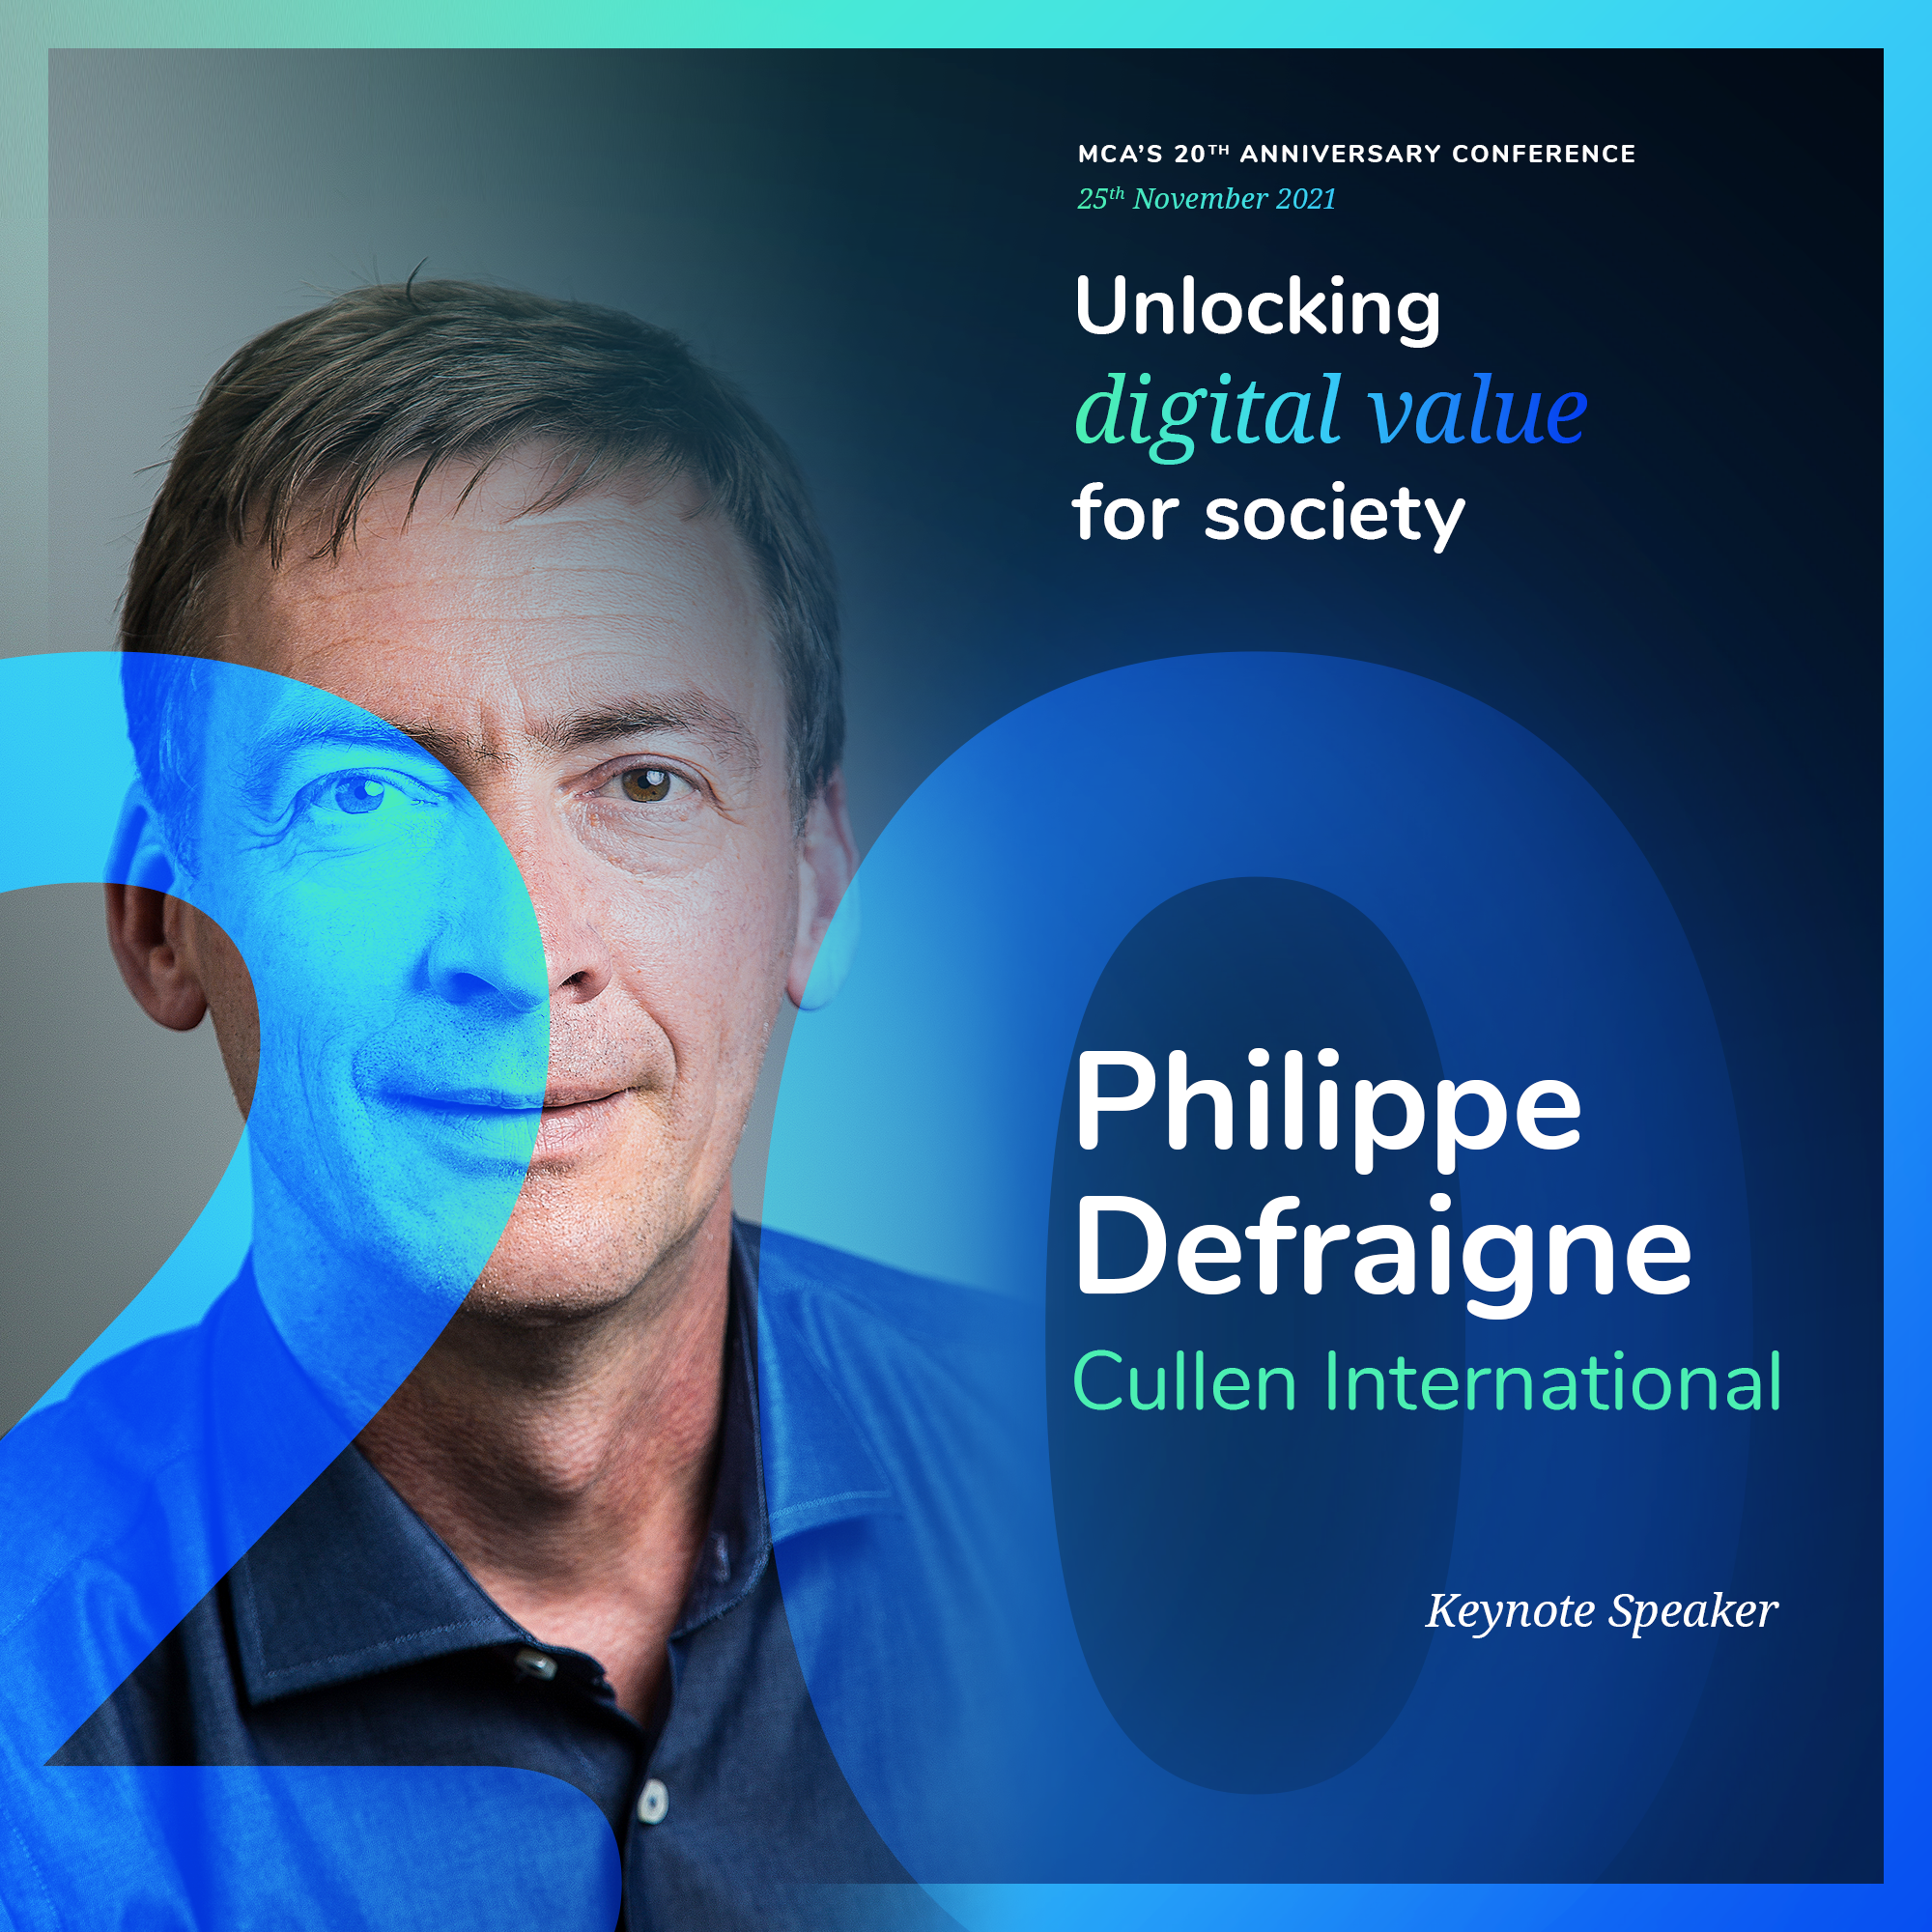 Philippe Defraigne